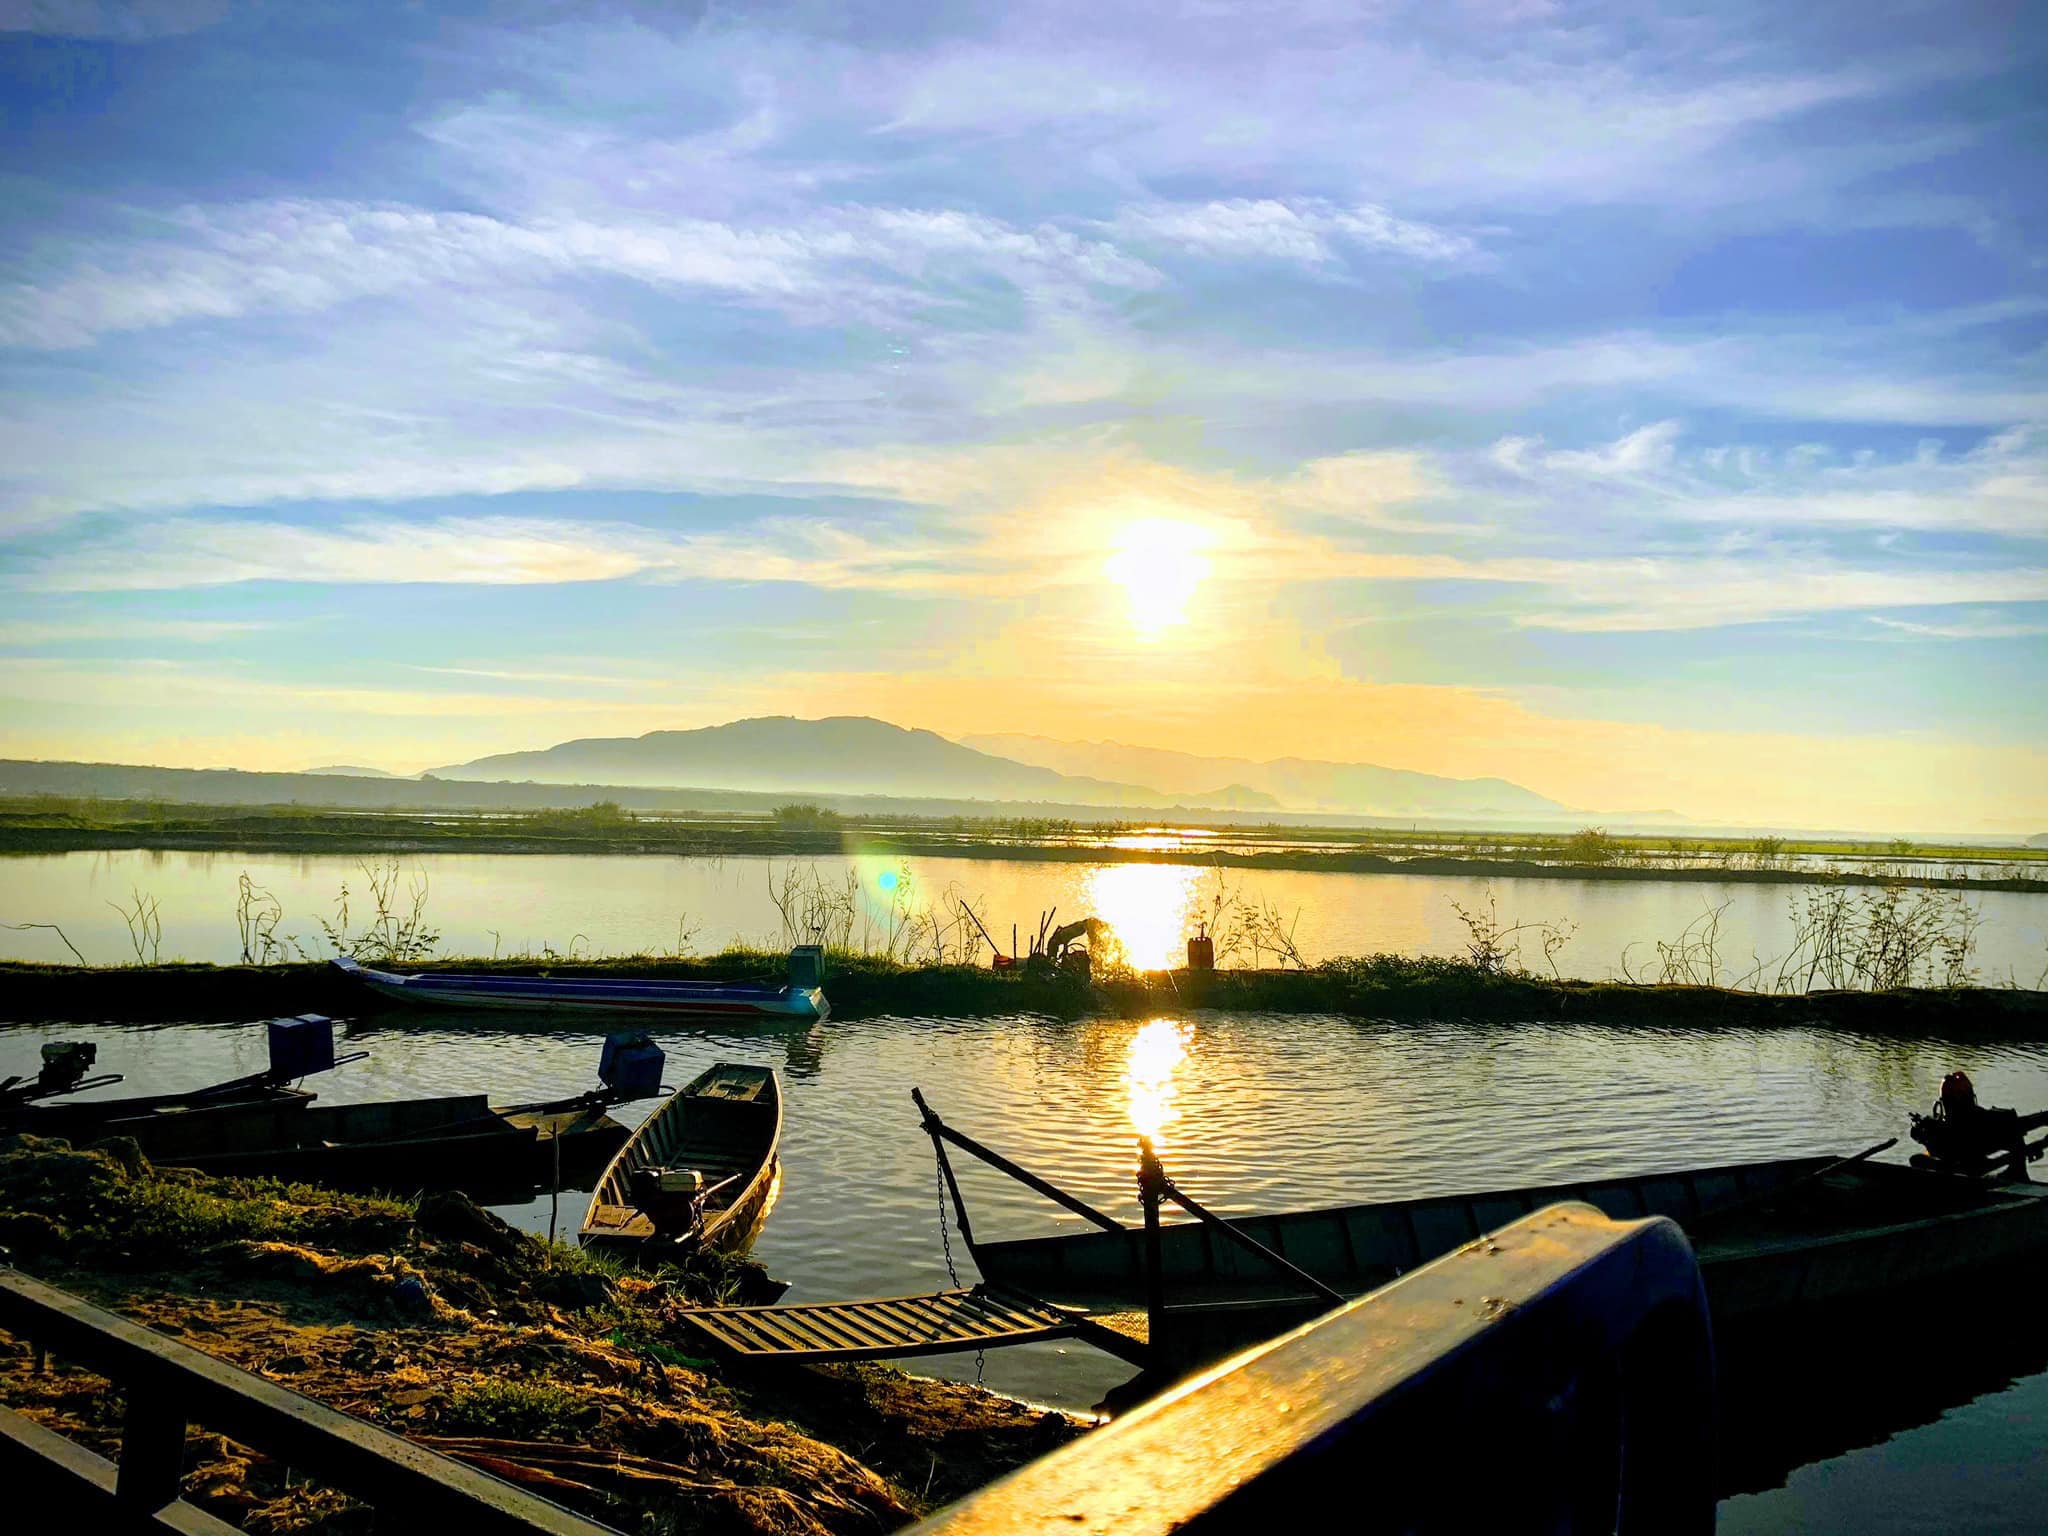 Hồ Biển Lạc là một điểm đến lý tưởng để thư giãn và tìm lại bình yên